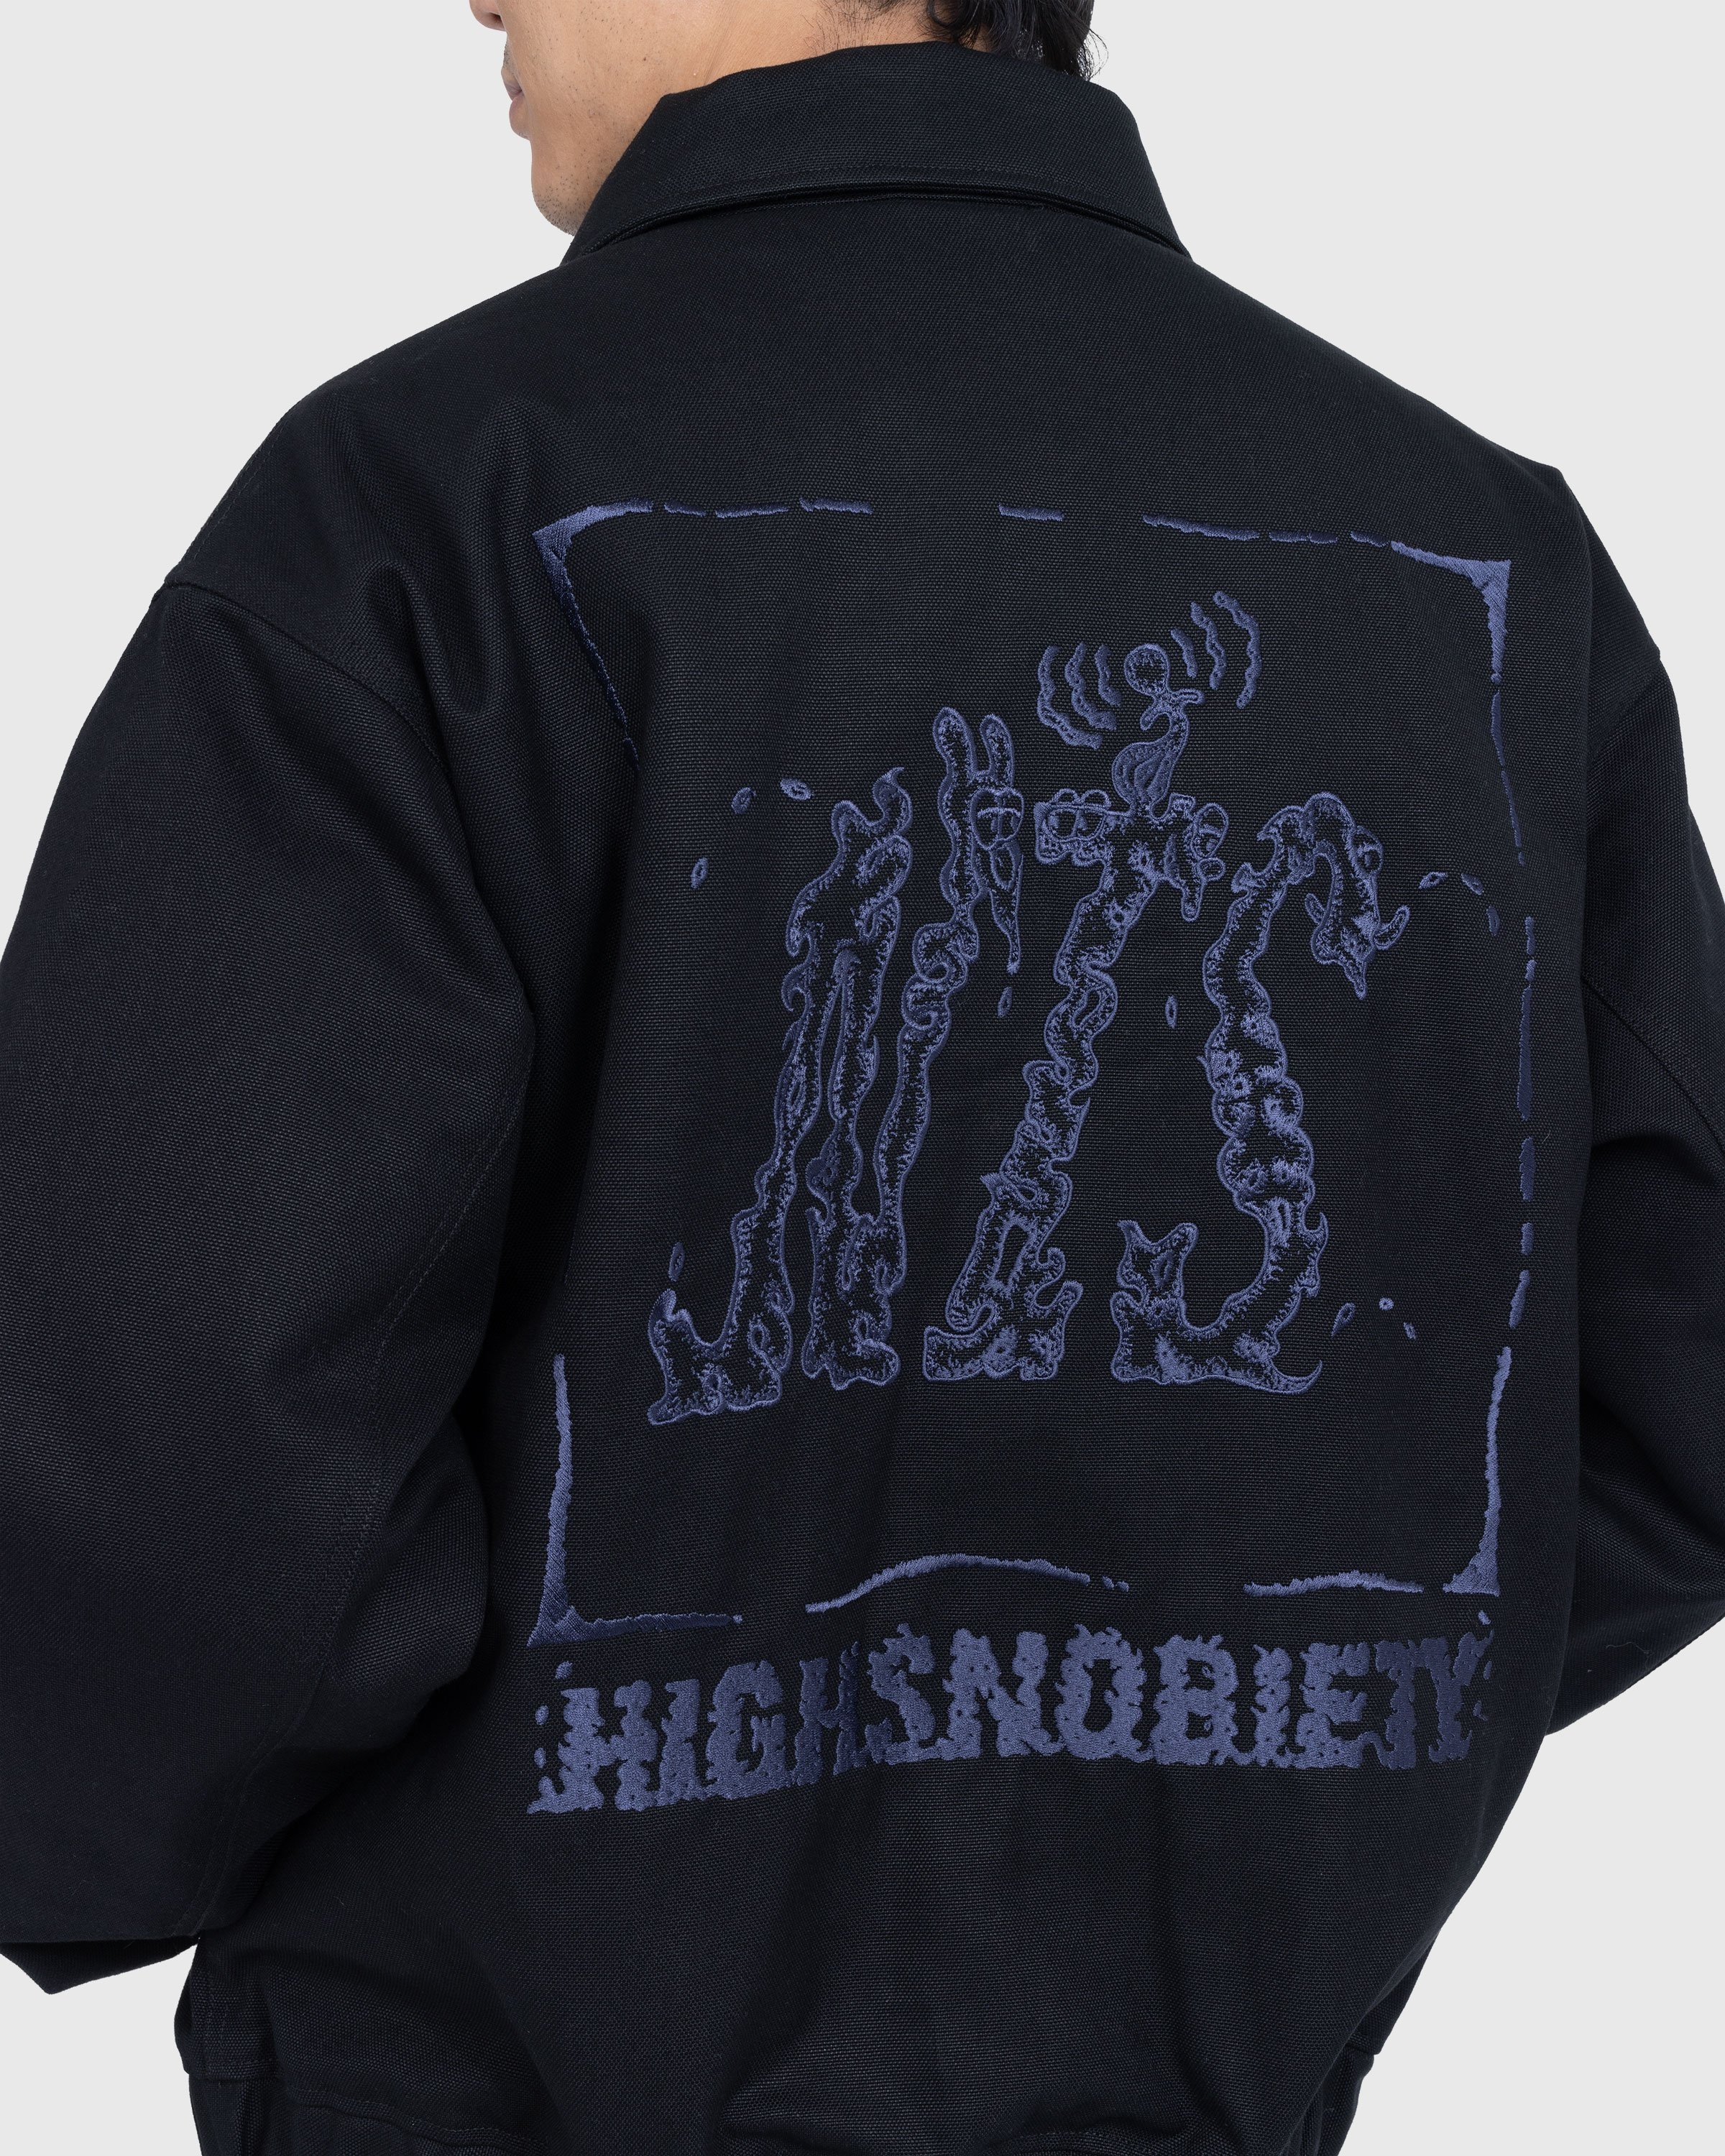 NTS x Highsnobiety – Stonewashed Canvas Bomber Jacket Black - Outerwear - Black - Image 6